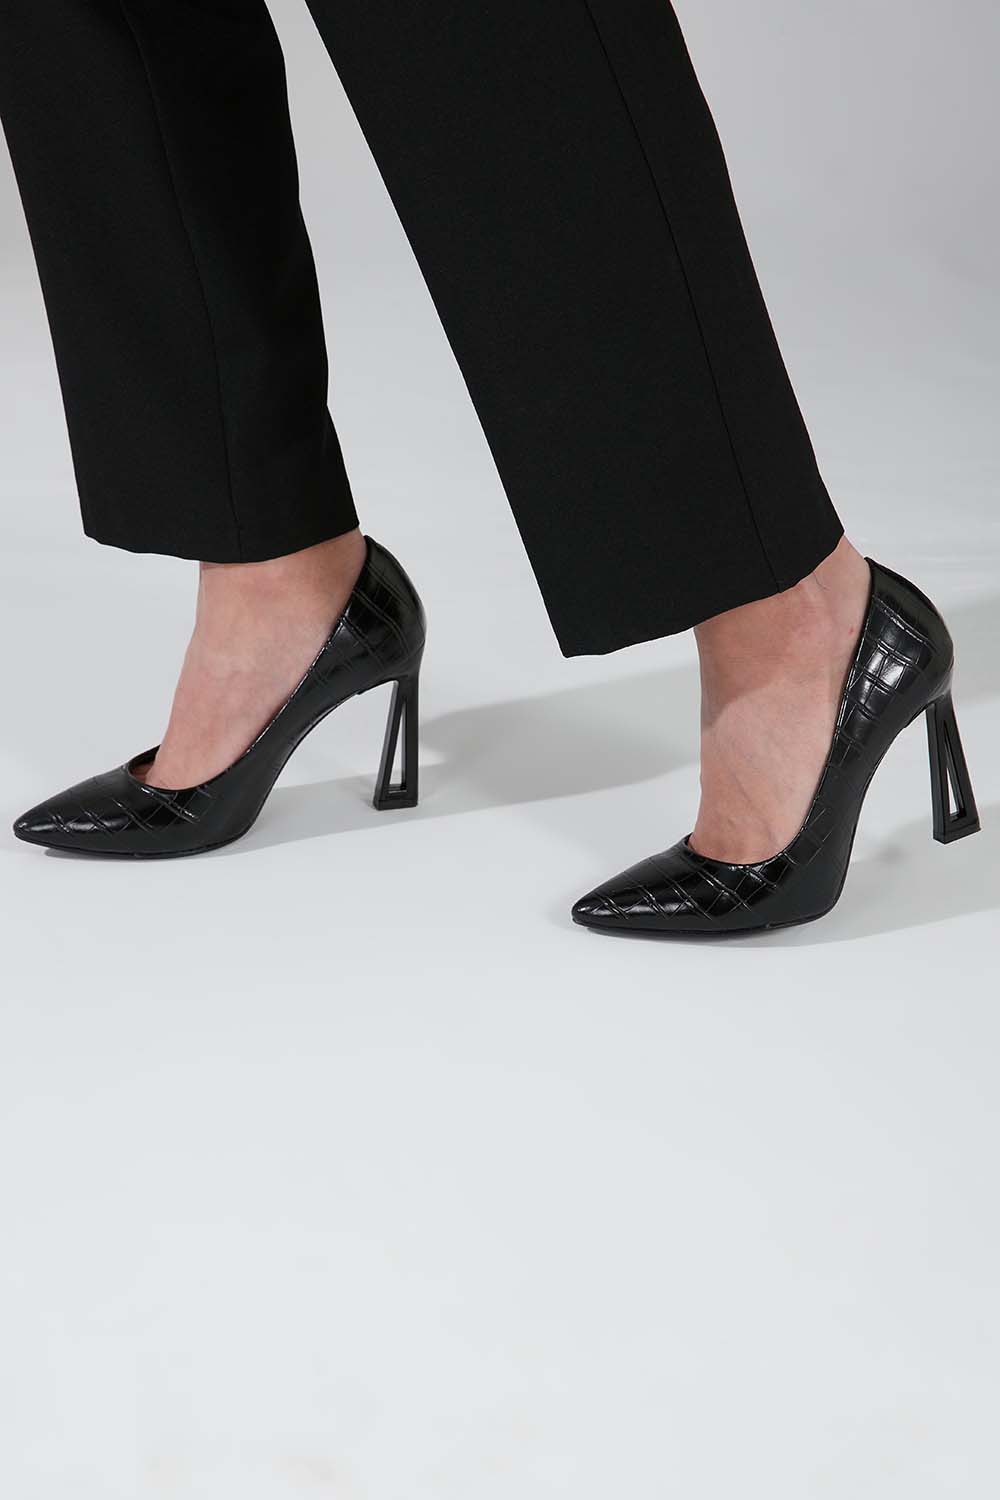 Kroko Tasarım Topuklu Ayakkabı (Siyah)